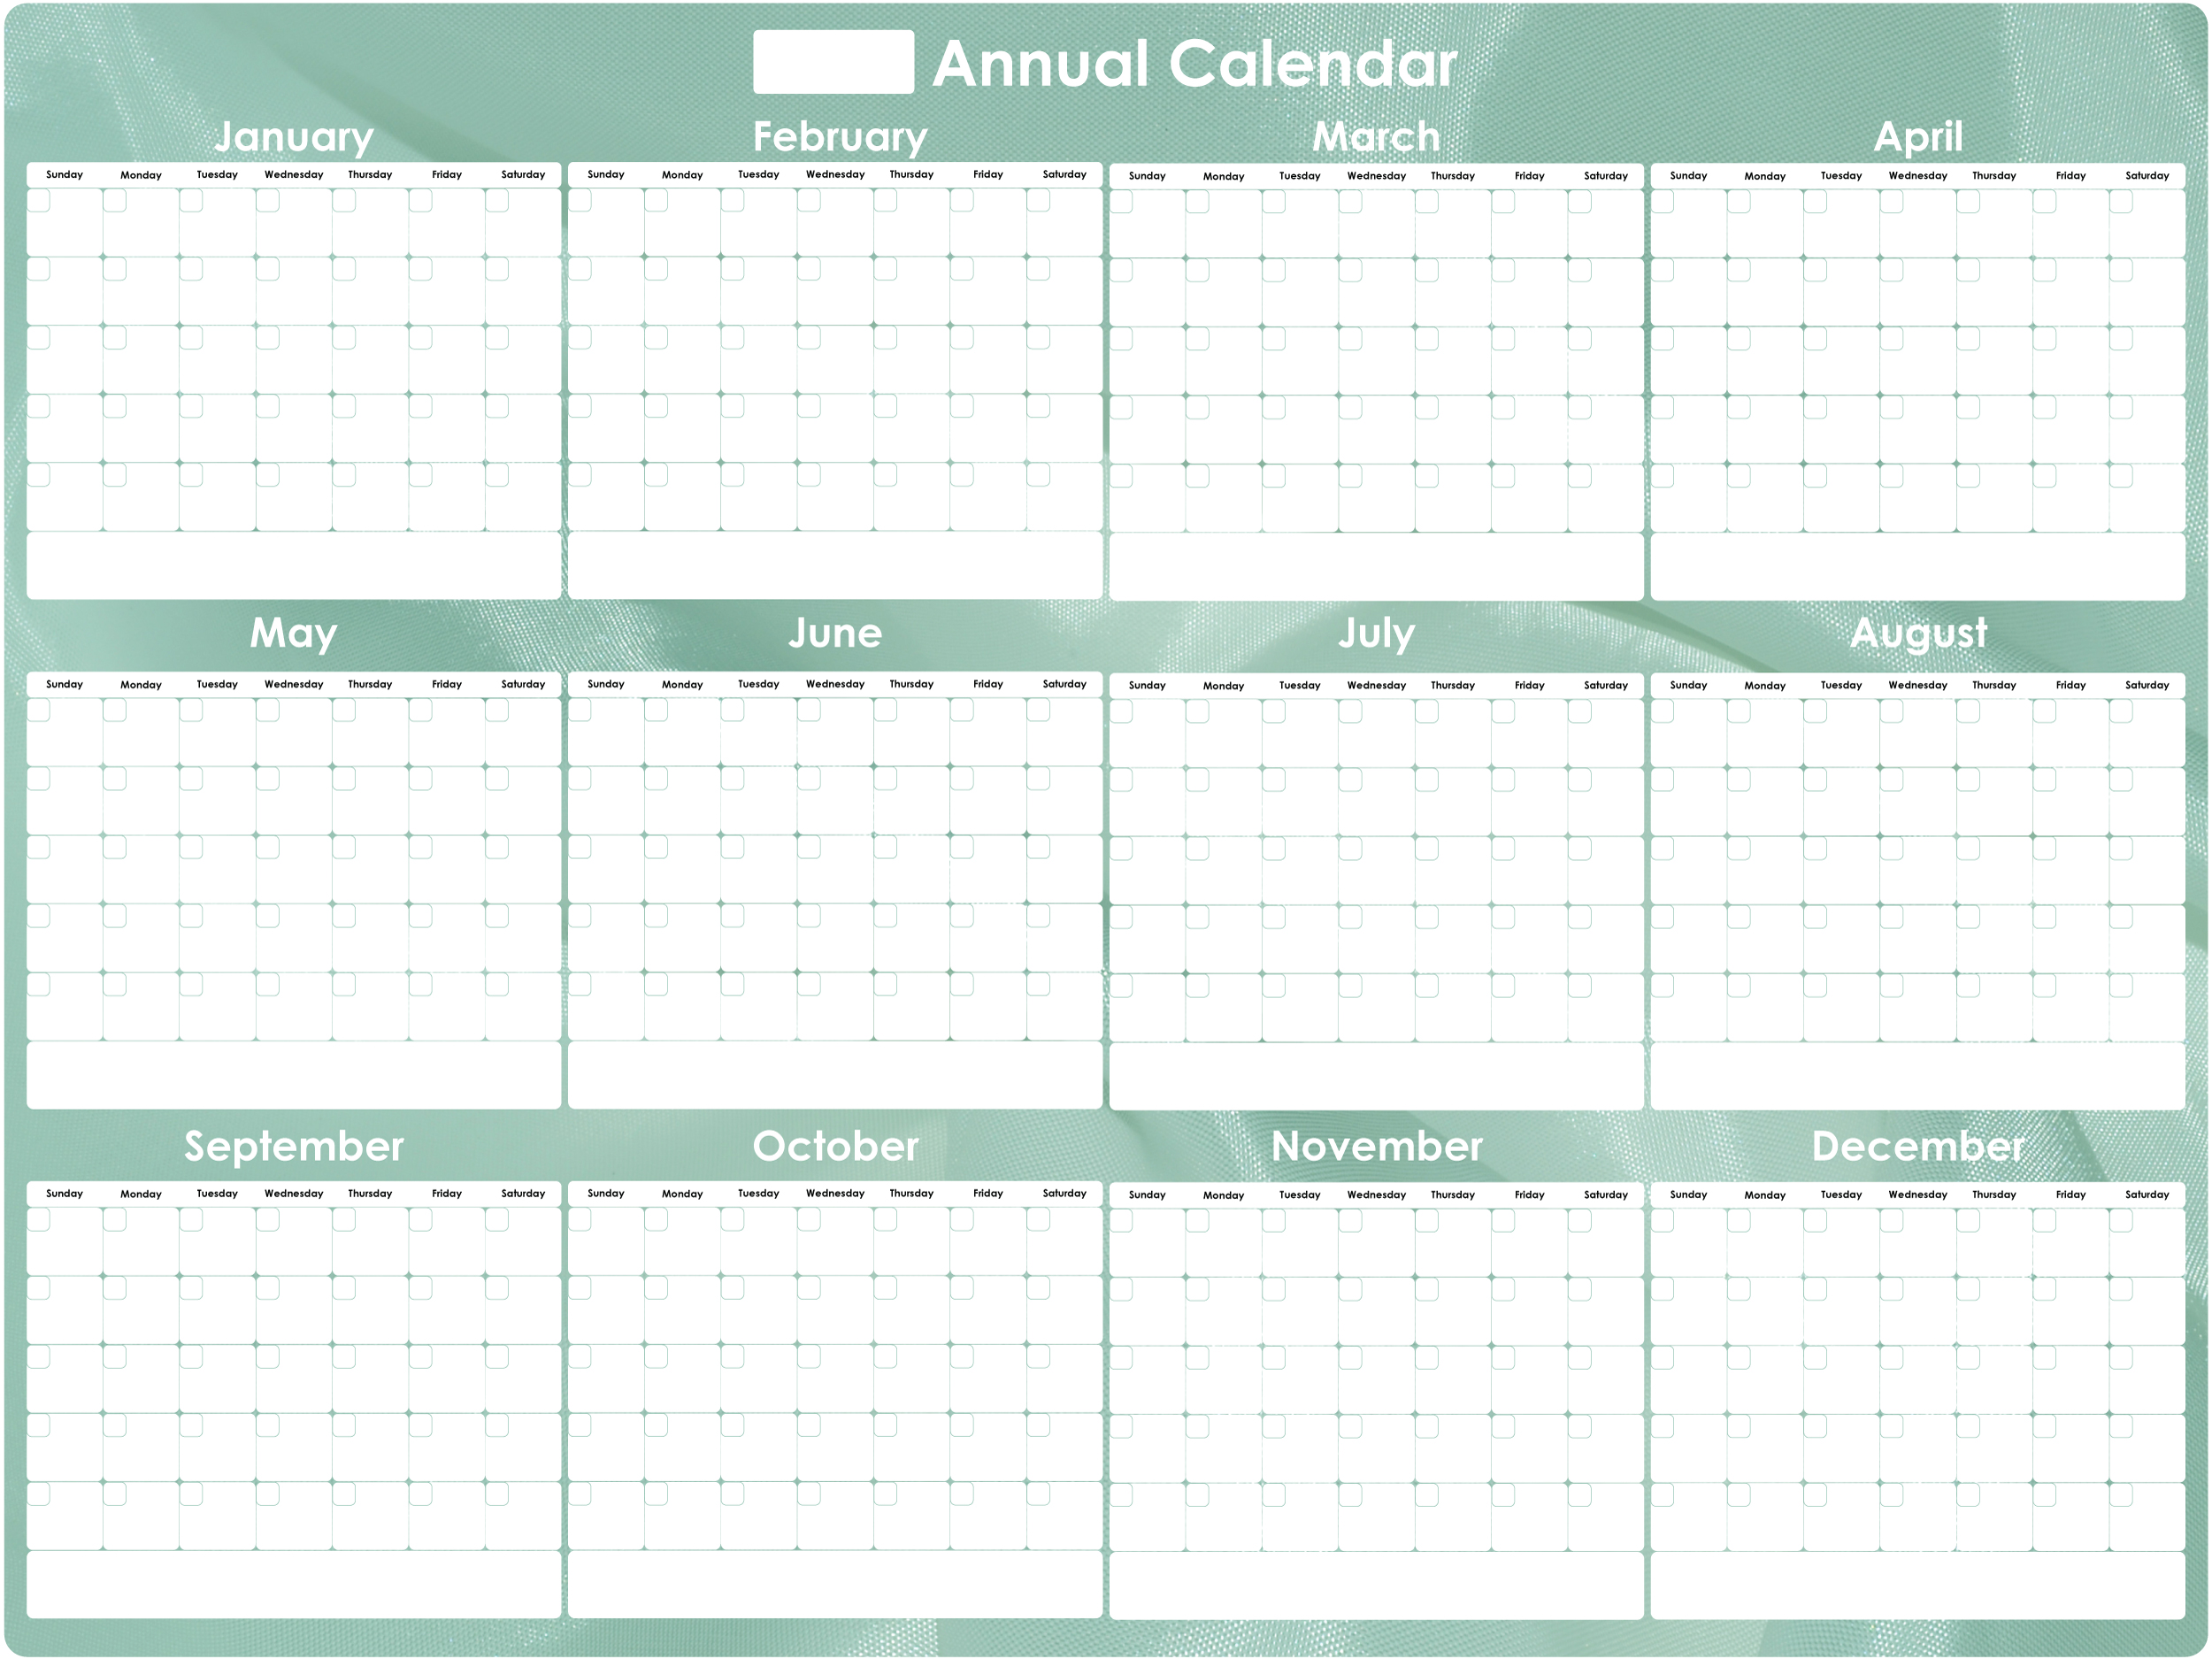 annual-calendar